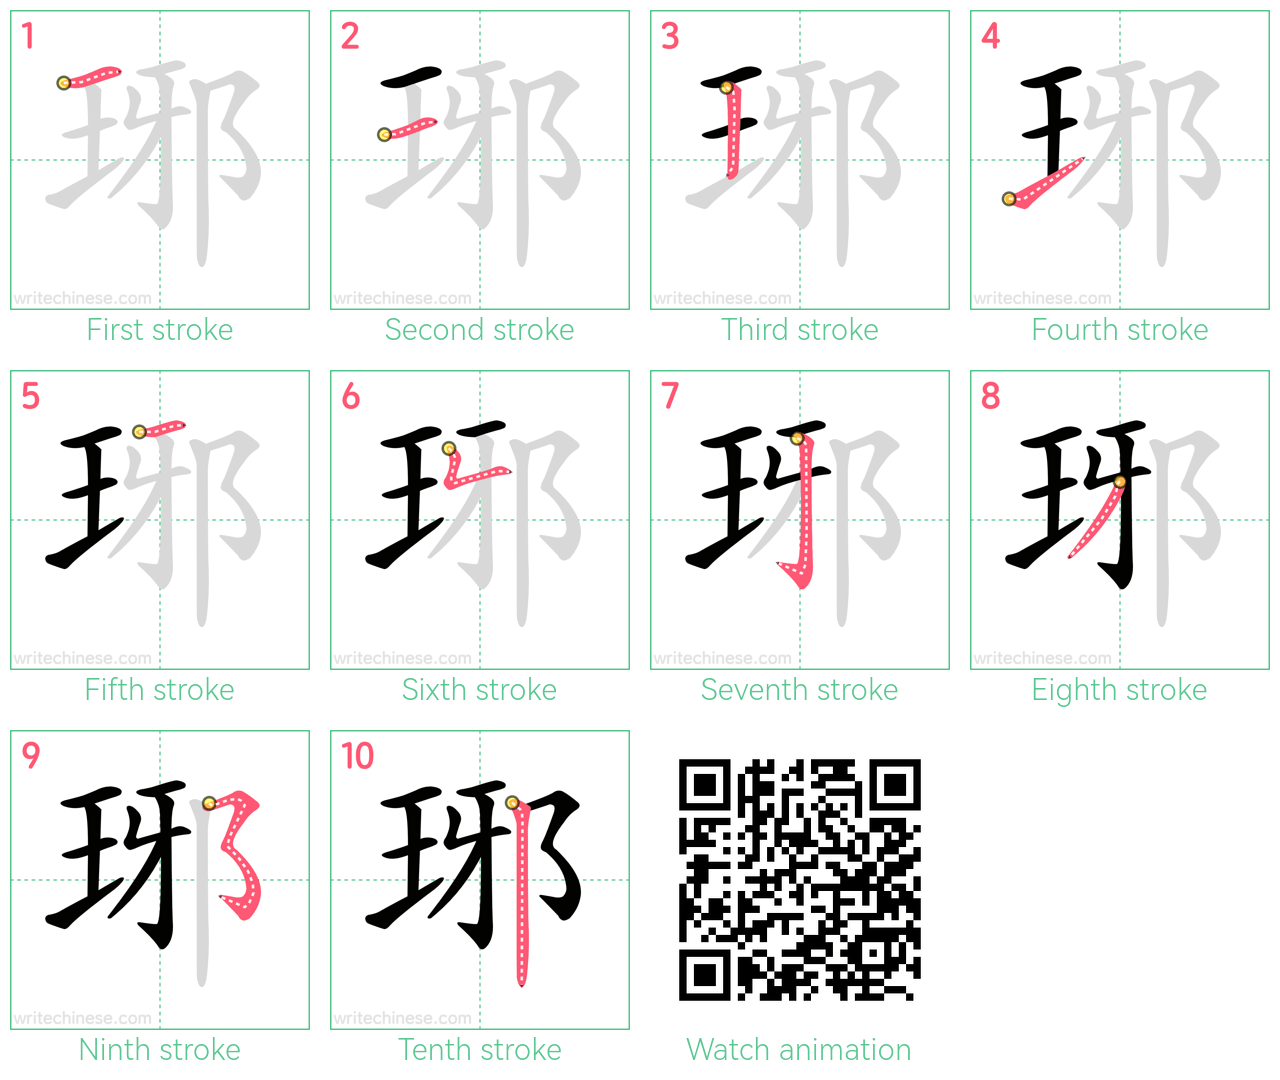 琊 step-by-step stroke order diagrams